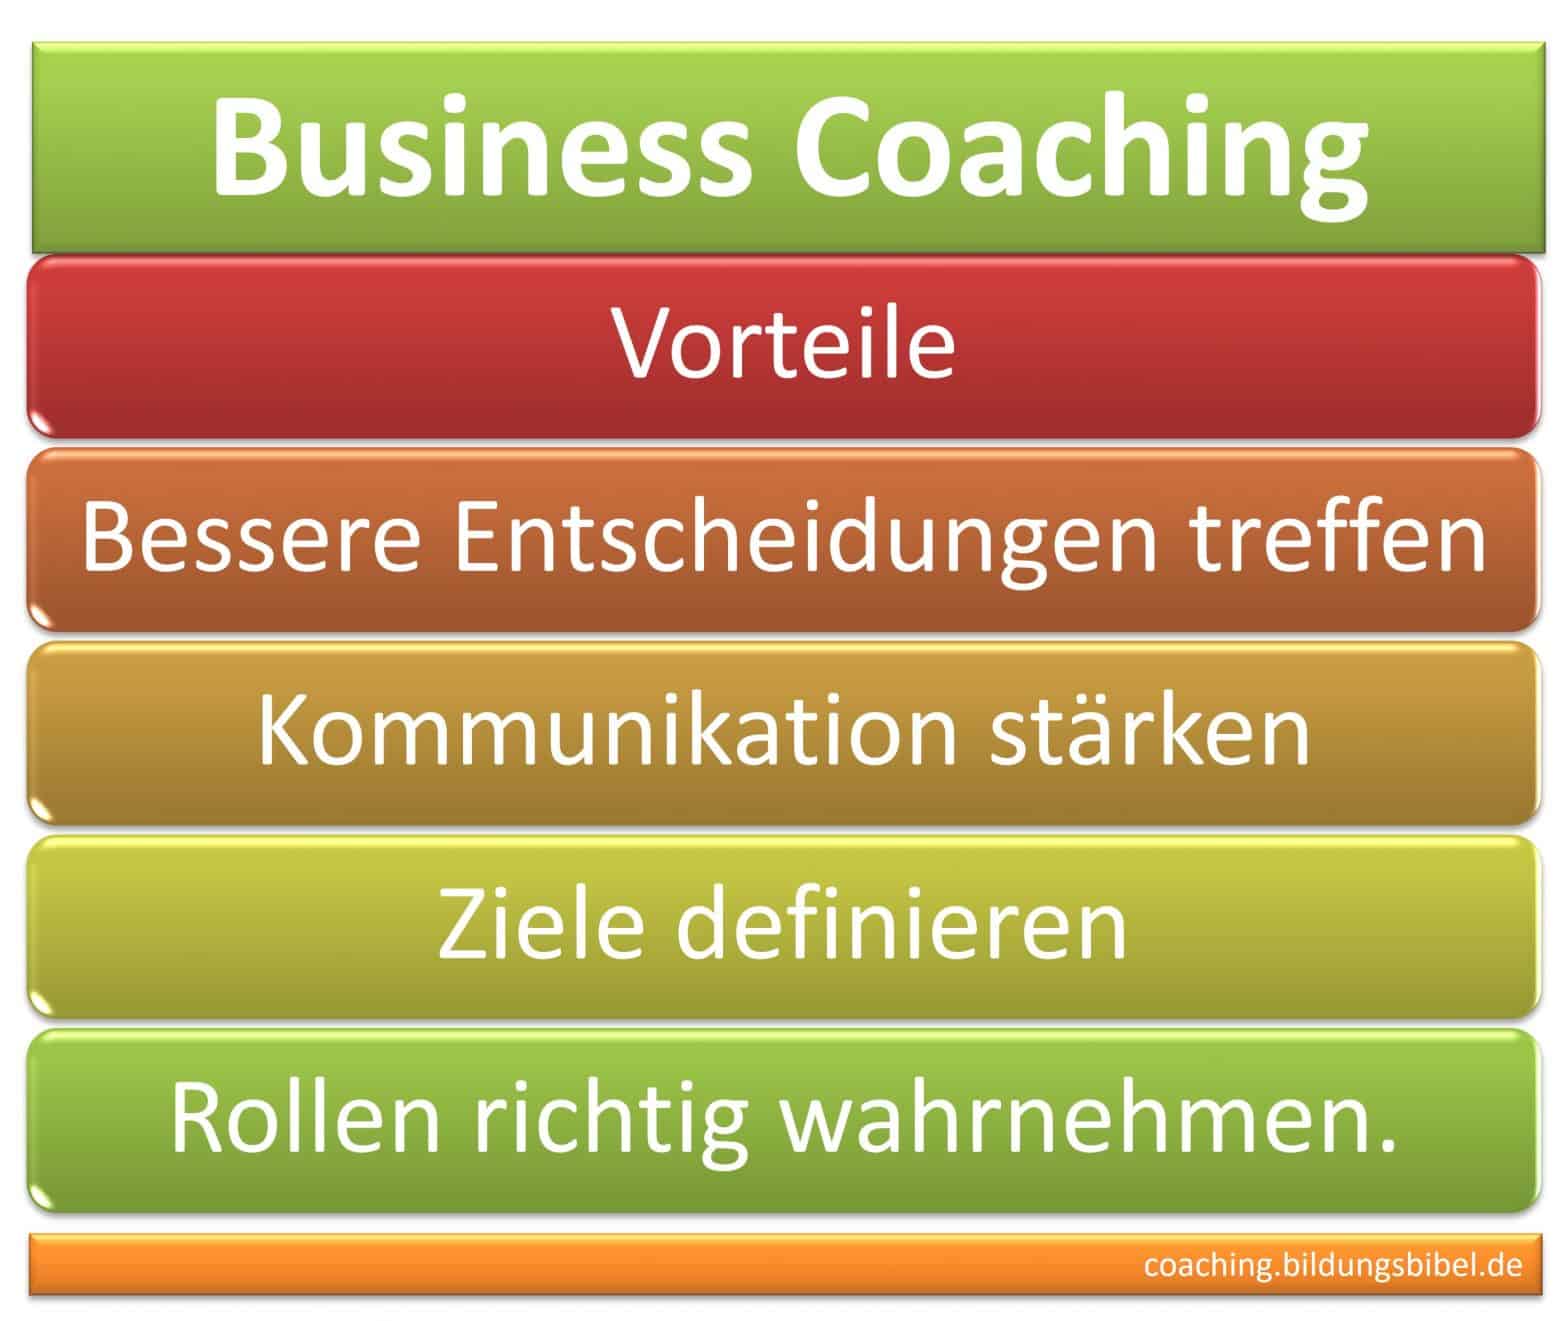 Business Coaching, Vorteile, bessere Entscheidungen treffen, Kommunikation stärken, Ziele definieren und Rollen richtig wahrnehmen.